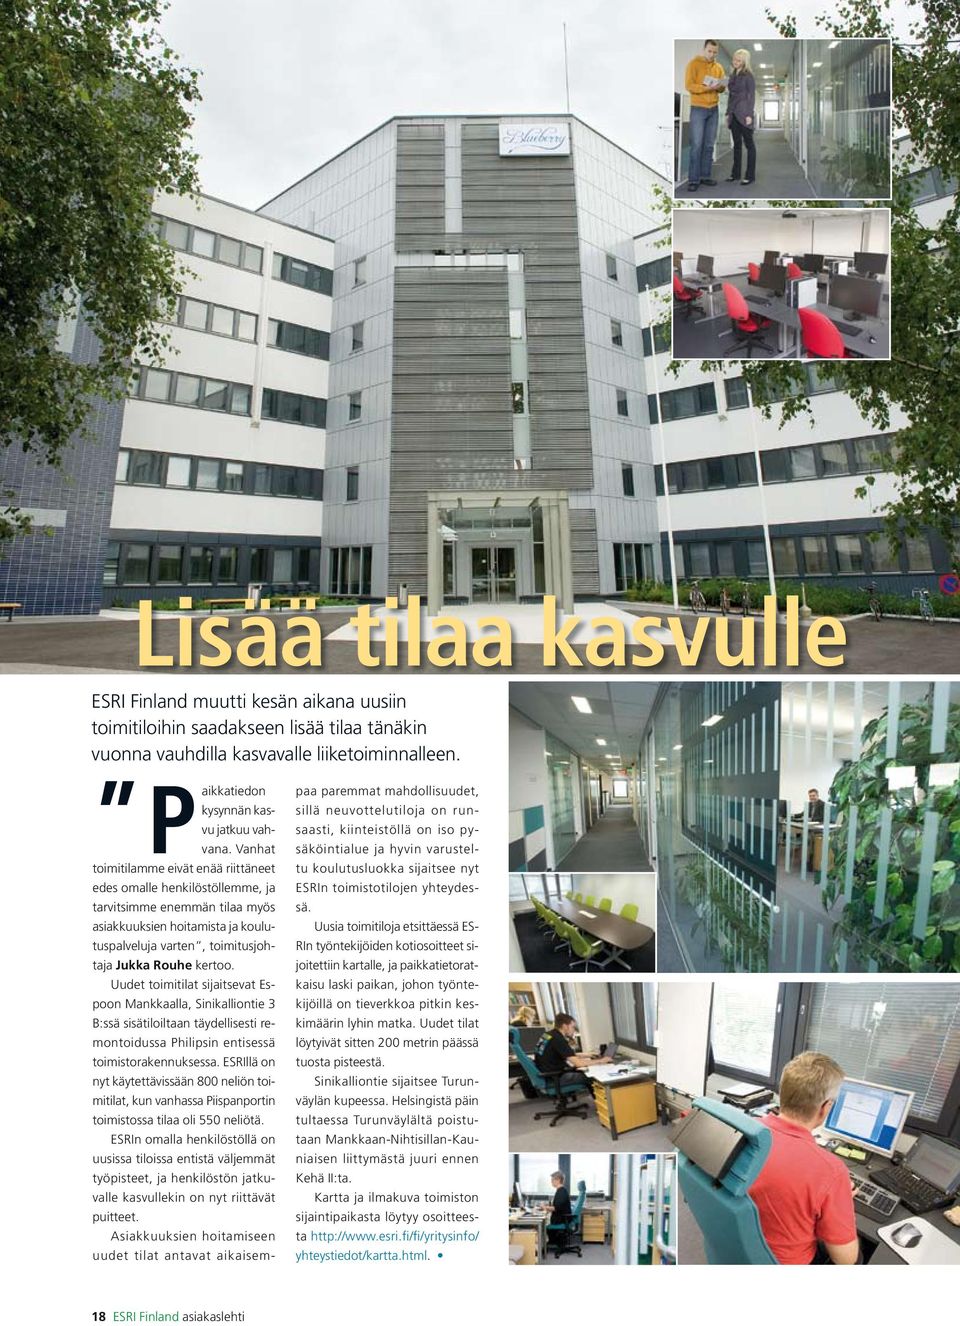 Rouhe kertoo. Uudet toimitilat sijaitsevat Espoon Mankkaalla, Sinikalliontie 3 B:ssä sisätiloiltaan täydellisesti remontoidussa Philipsin entisessä toimistorakennuksessa.